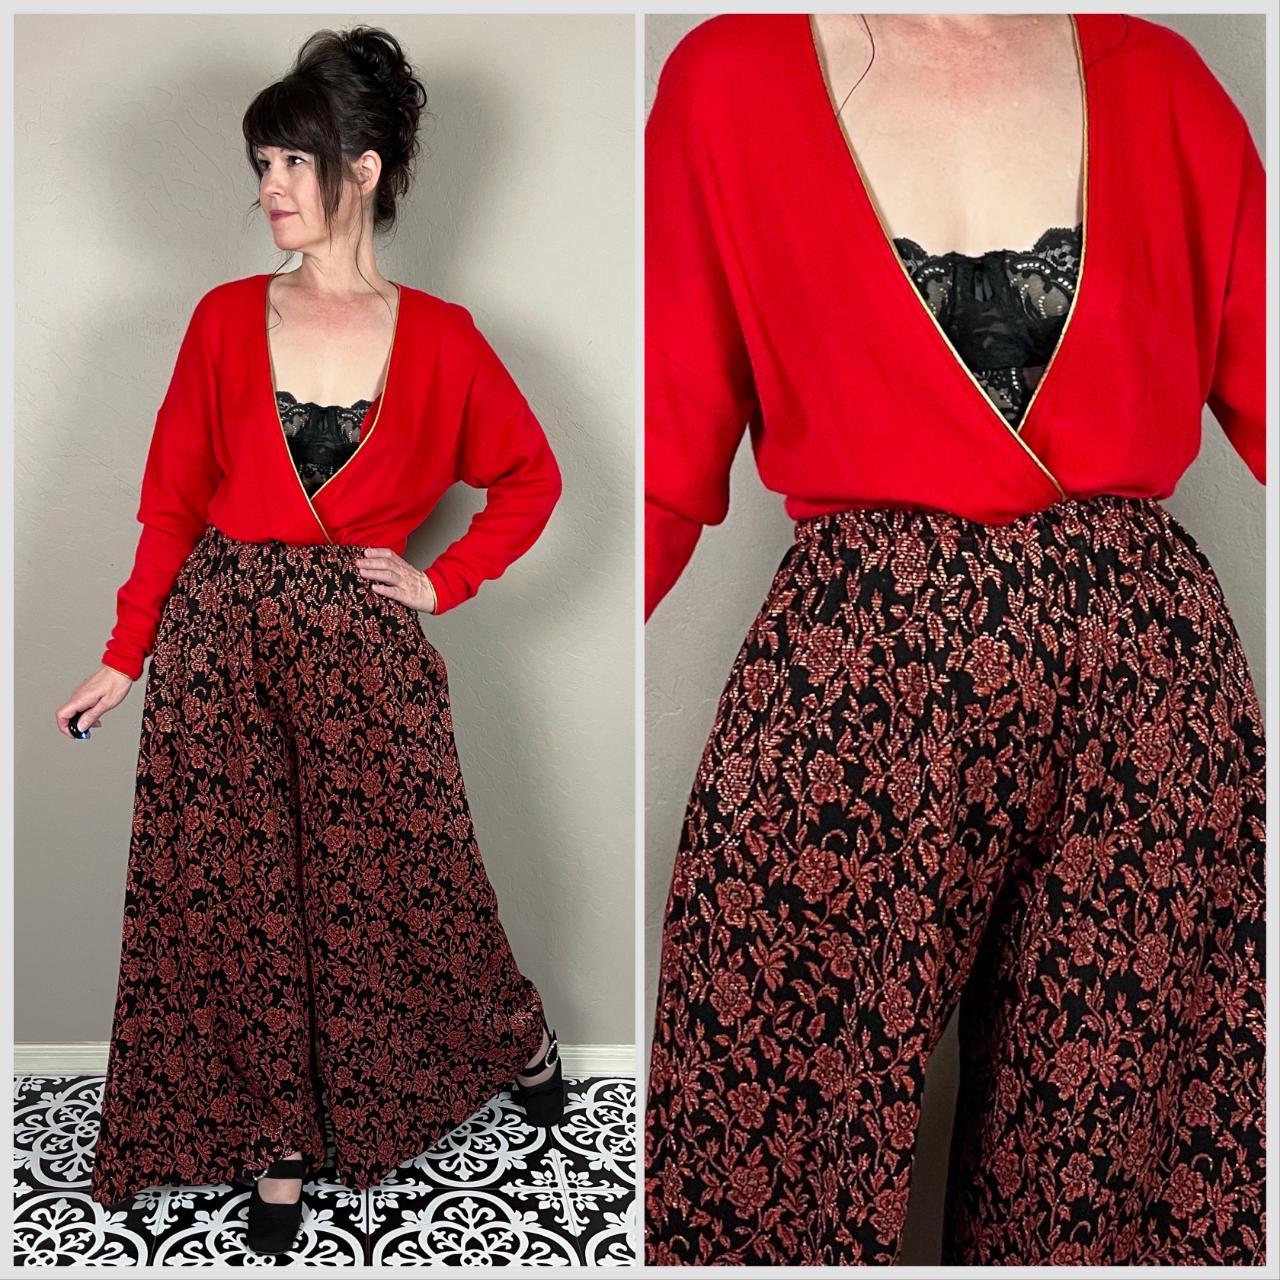 Vintage 1970s Red and Black Floral Knit Wide Leg... - Depop